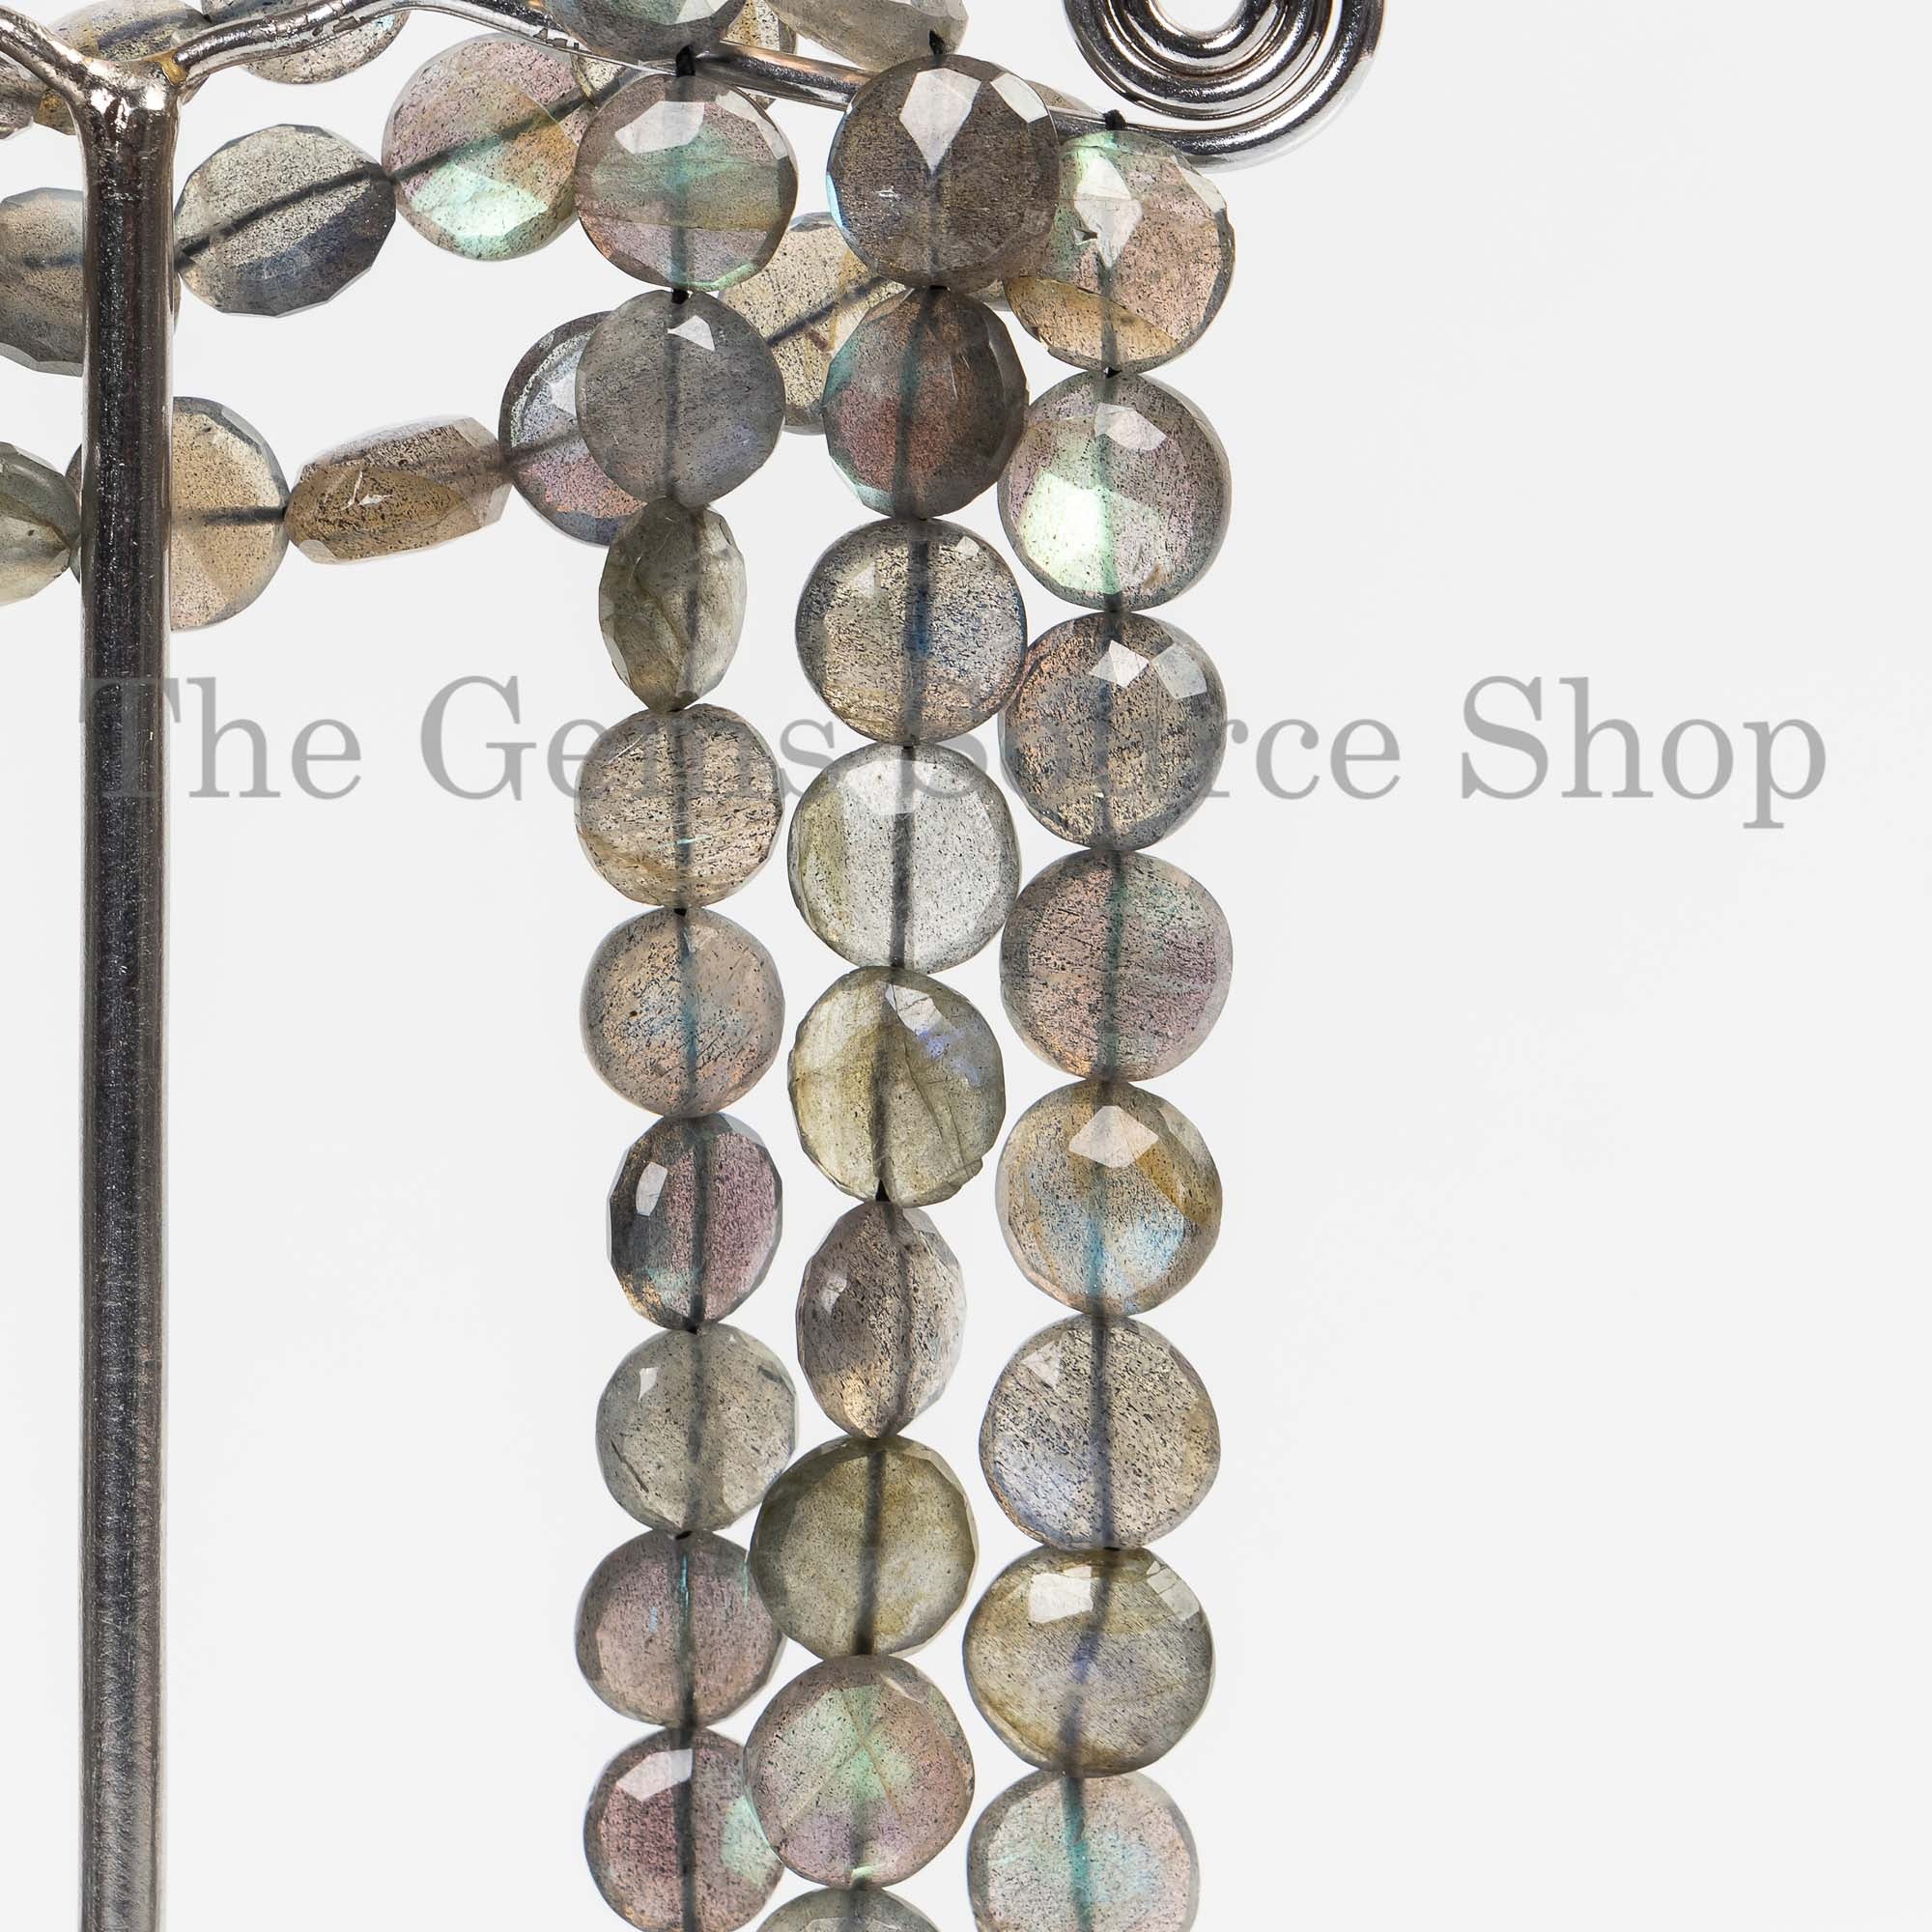 7-8mm Labradorite Faceted Coin Beads, Labradorite Beads, Labradorite Round Coin Briolette, Labradorite Faceted Beads, Coin Beads